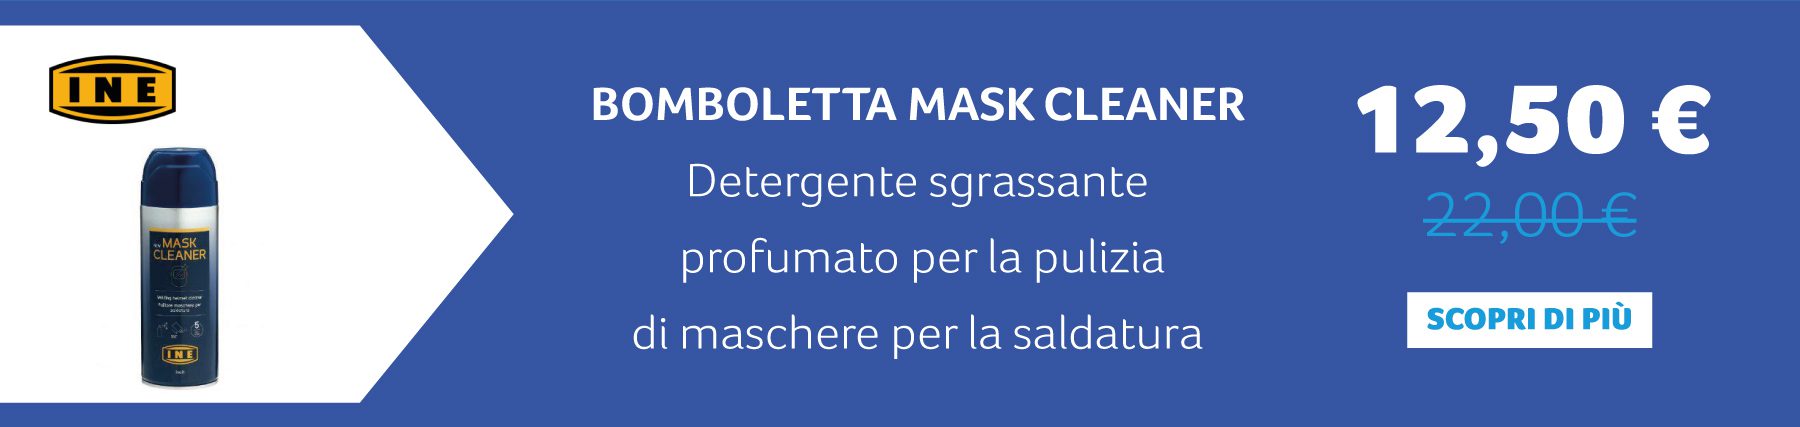 INE - Bomboletta Mask Cleaner Detergente sgrassante profumato per la pulizia di maschere per la saldatura. 12,50 € anziché 22,00 €